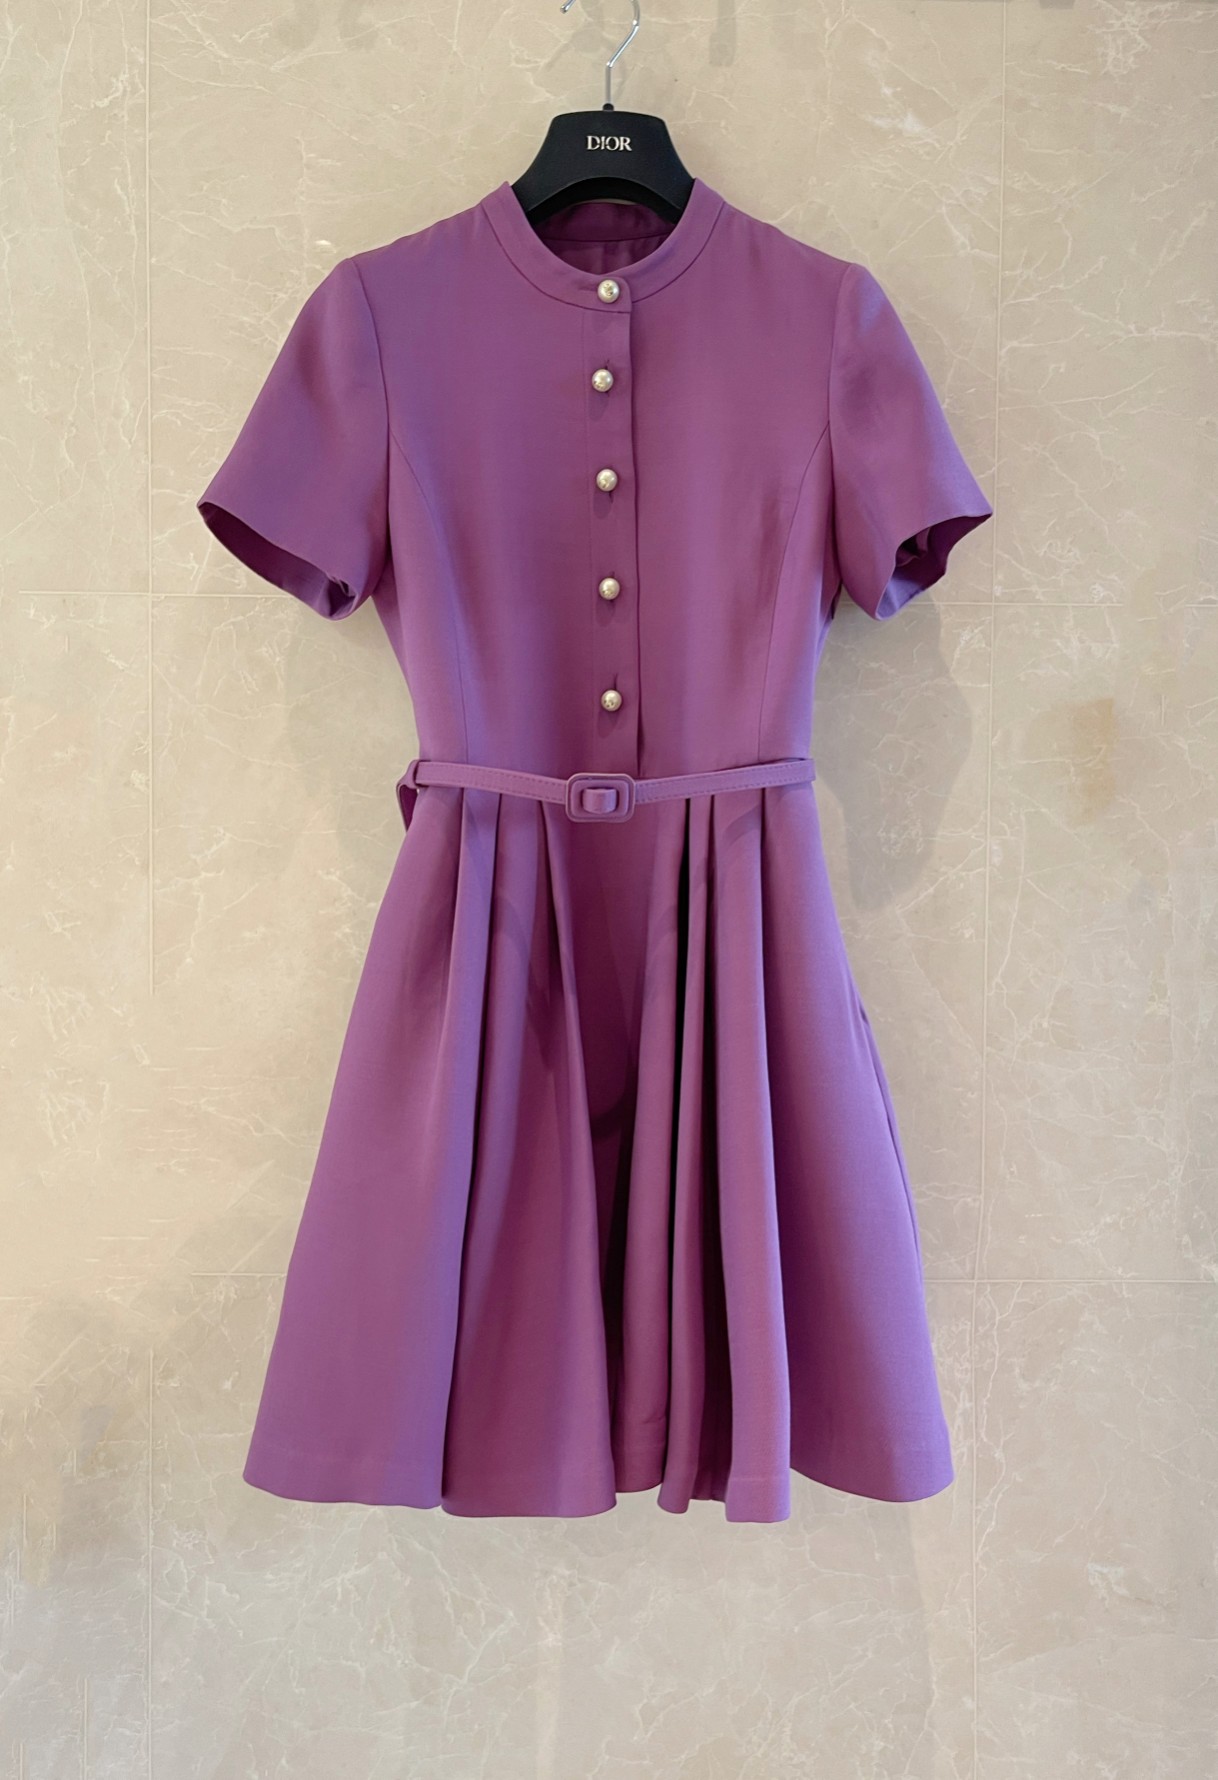 D家新品紫色丝毛短袖连衣裙高贵紫 立领设计上身显瘦气质36-38-40